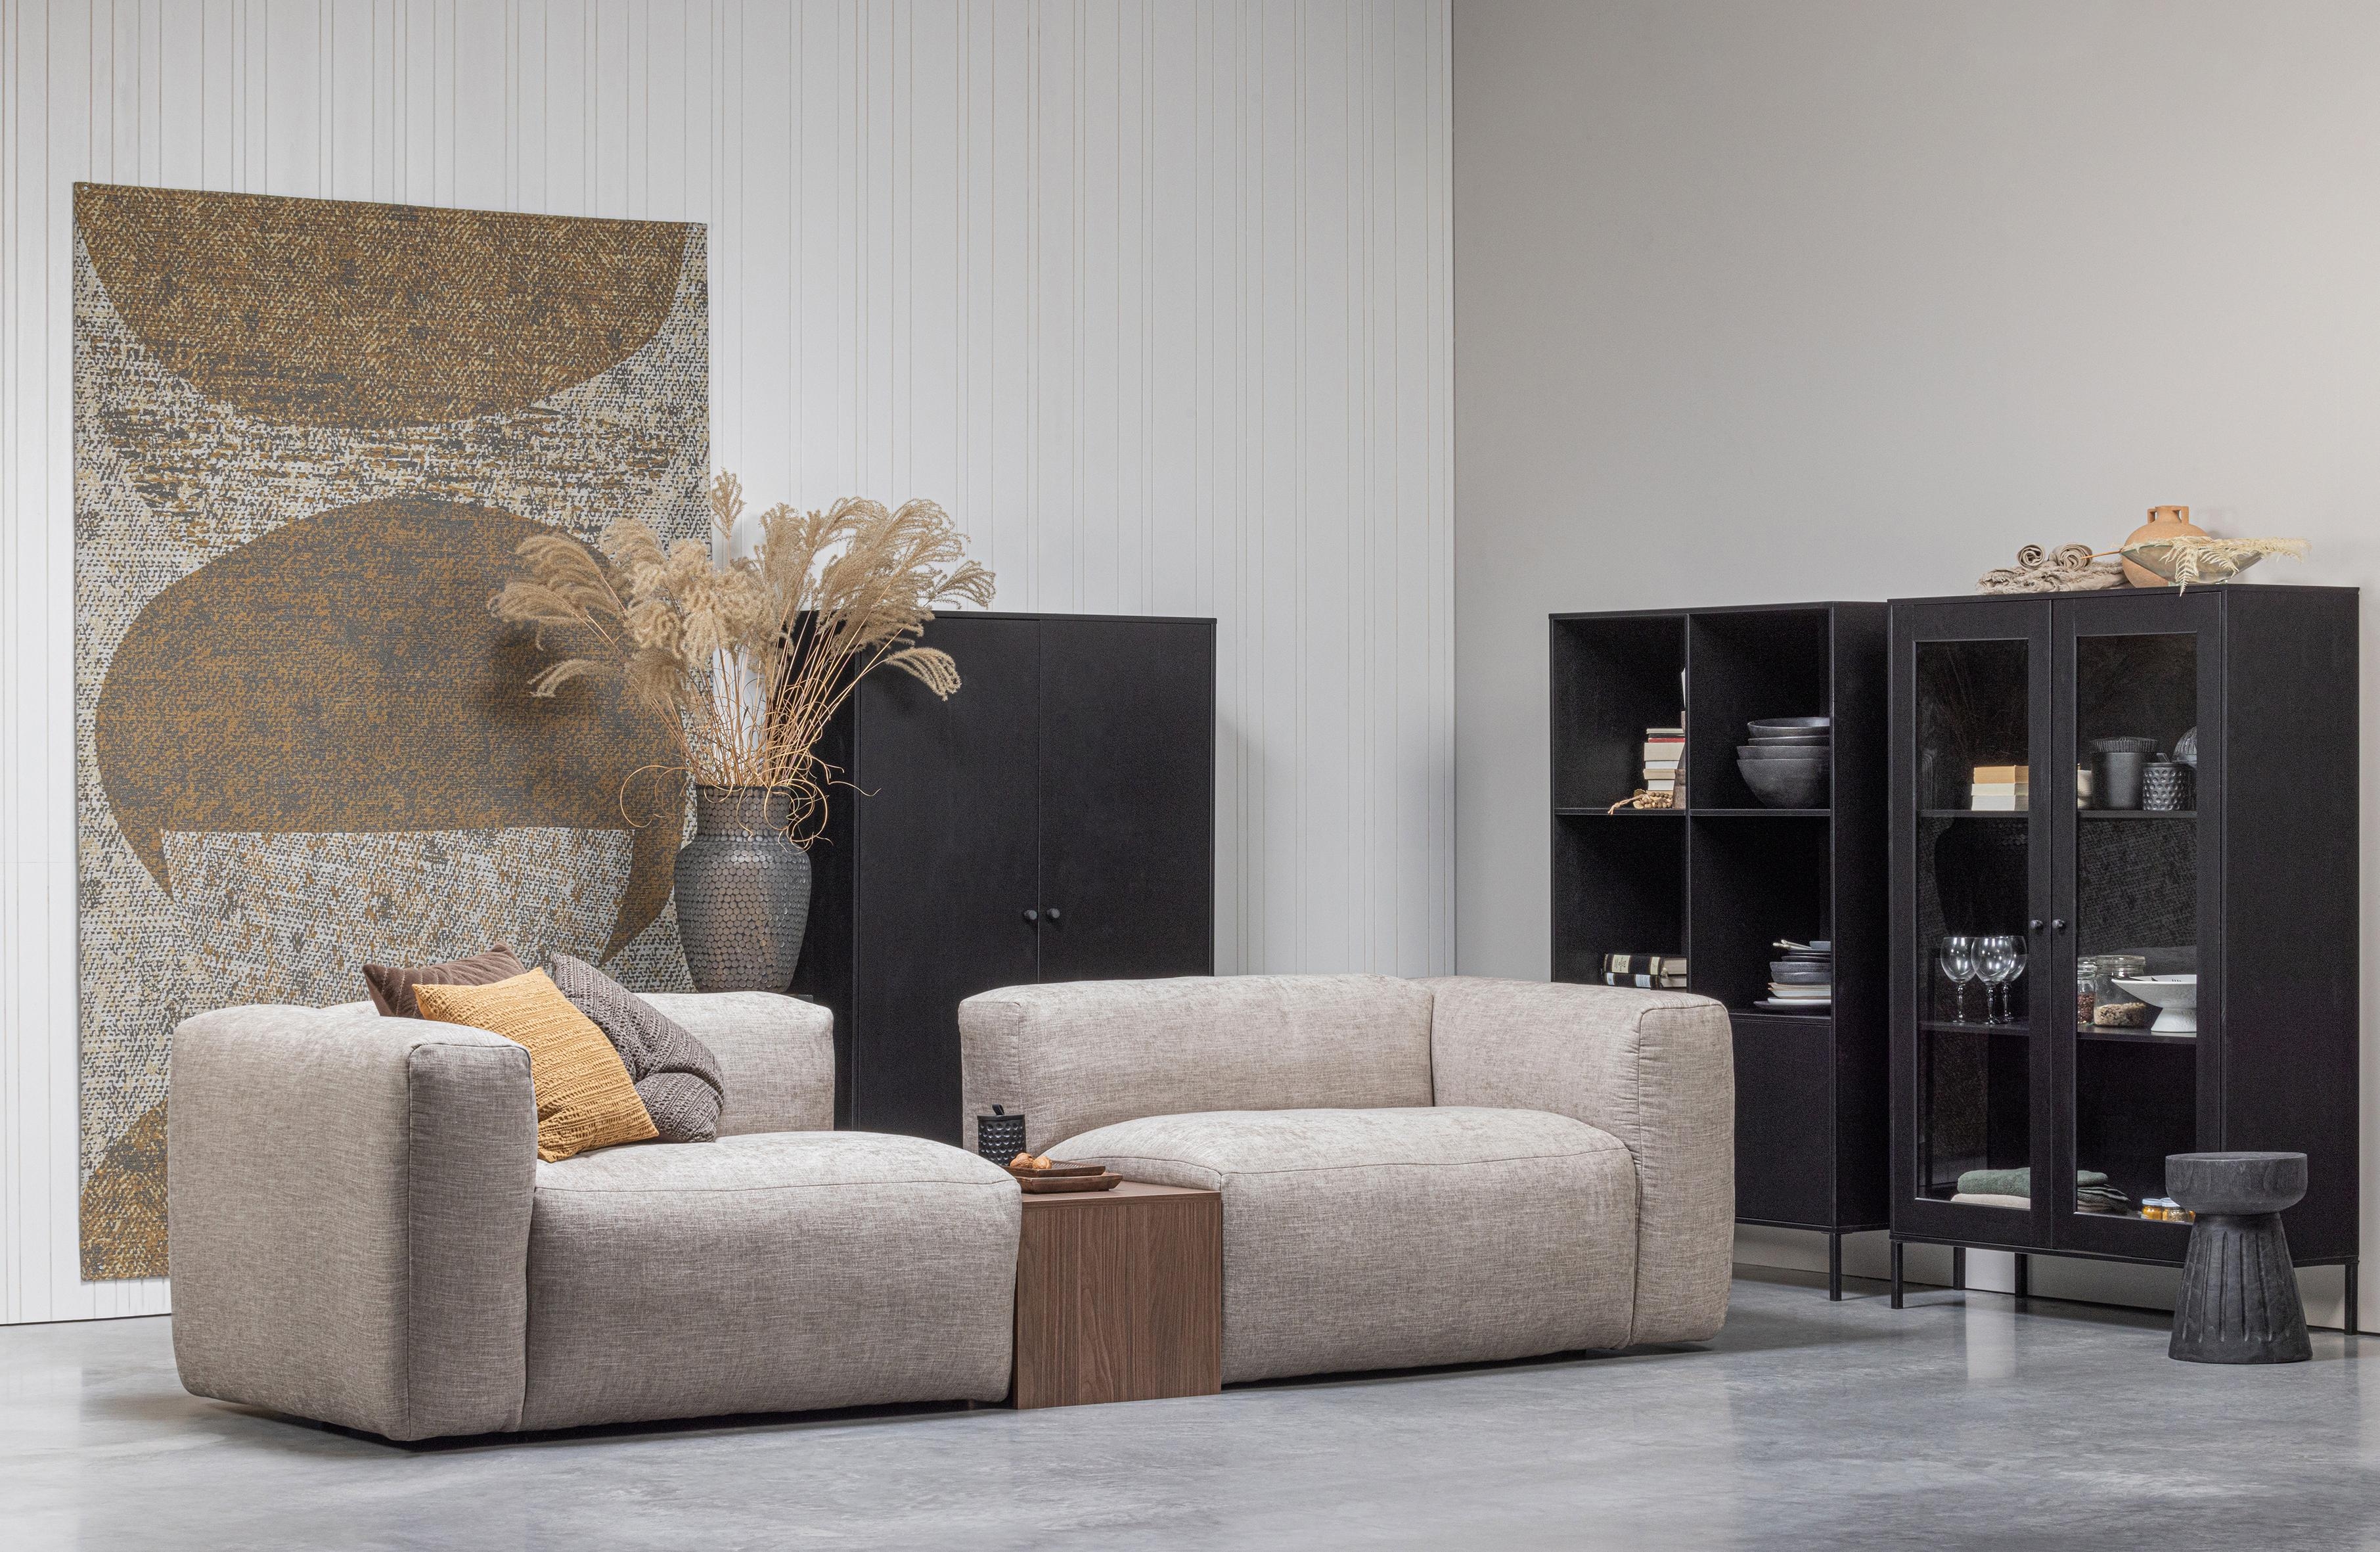 #couchliebt #sofa #wohnzimmer #couch #livingroom #couchstyle

